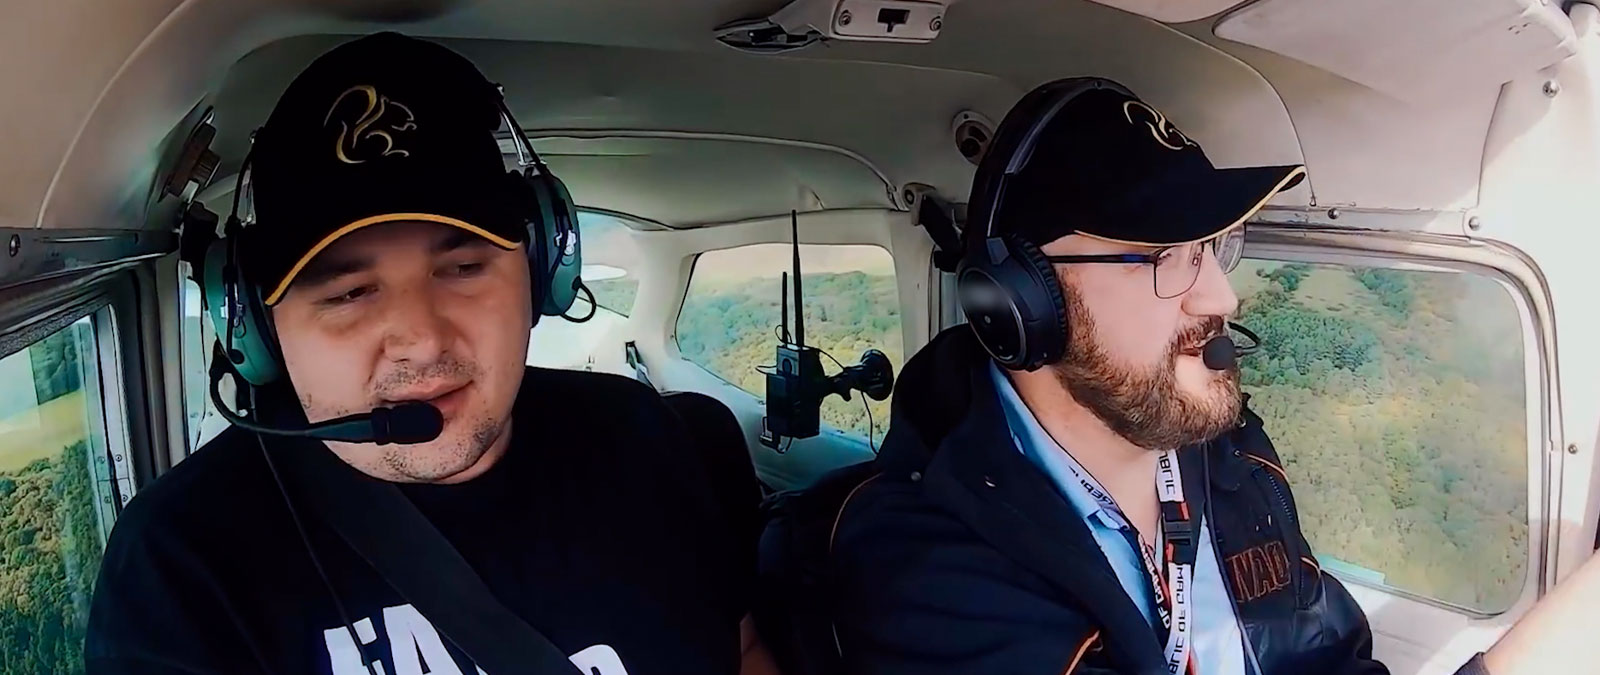 Zwei Personen mit Headsets und Hüten fliegen ein Flugzeug